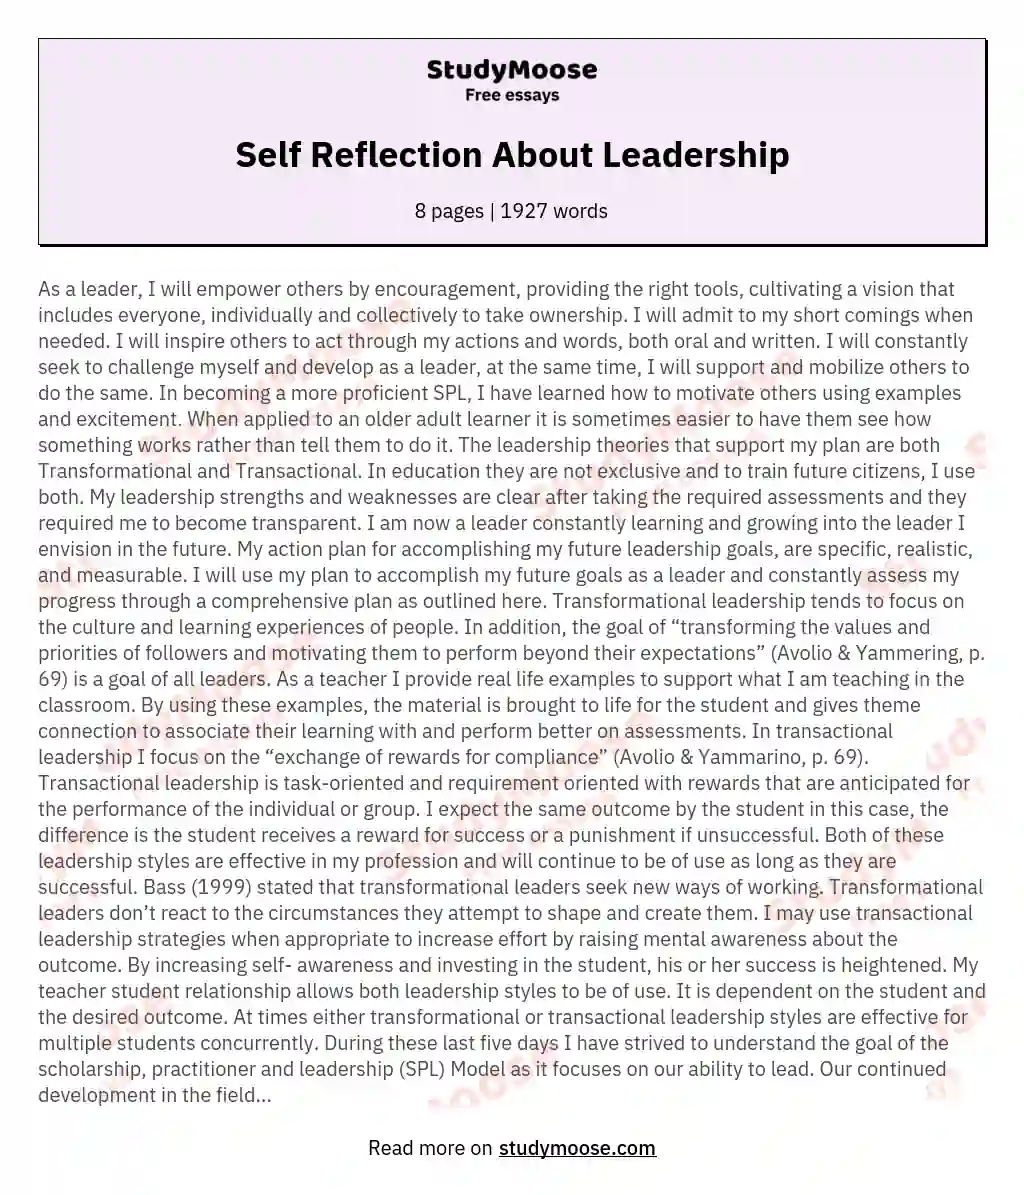 self awareness in leadership essay